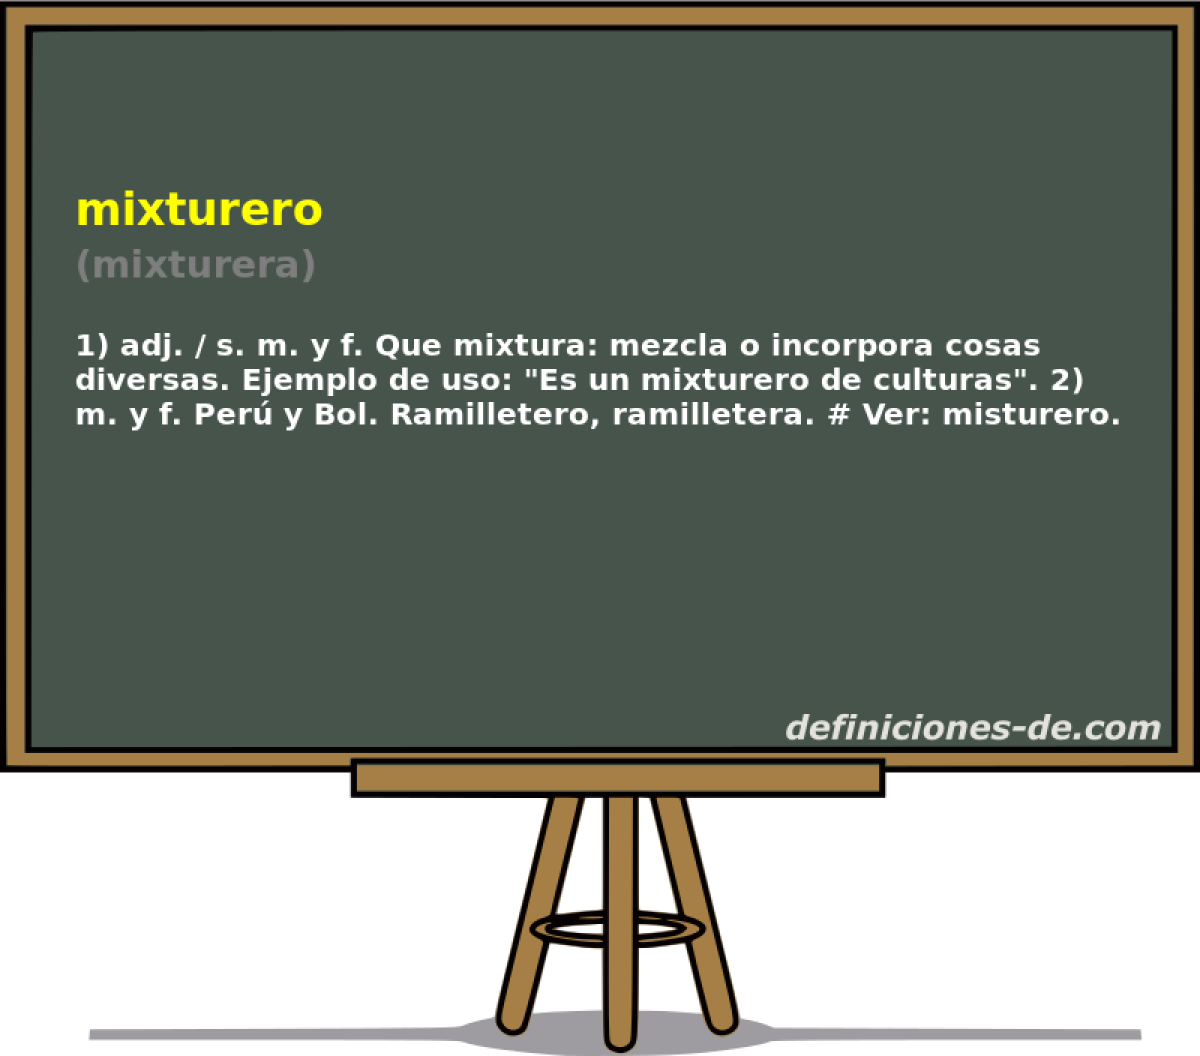 mixturero (mixturera)